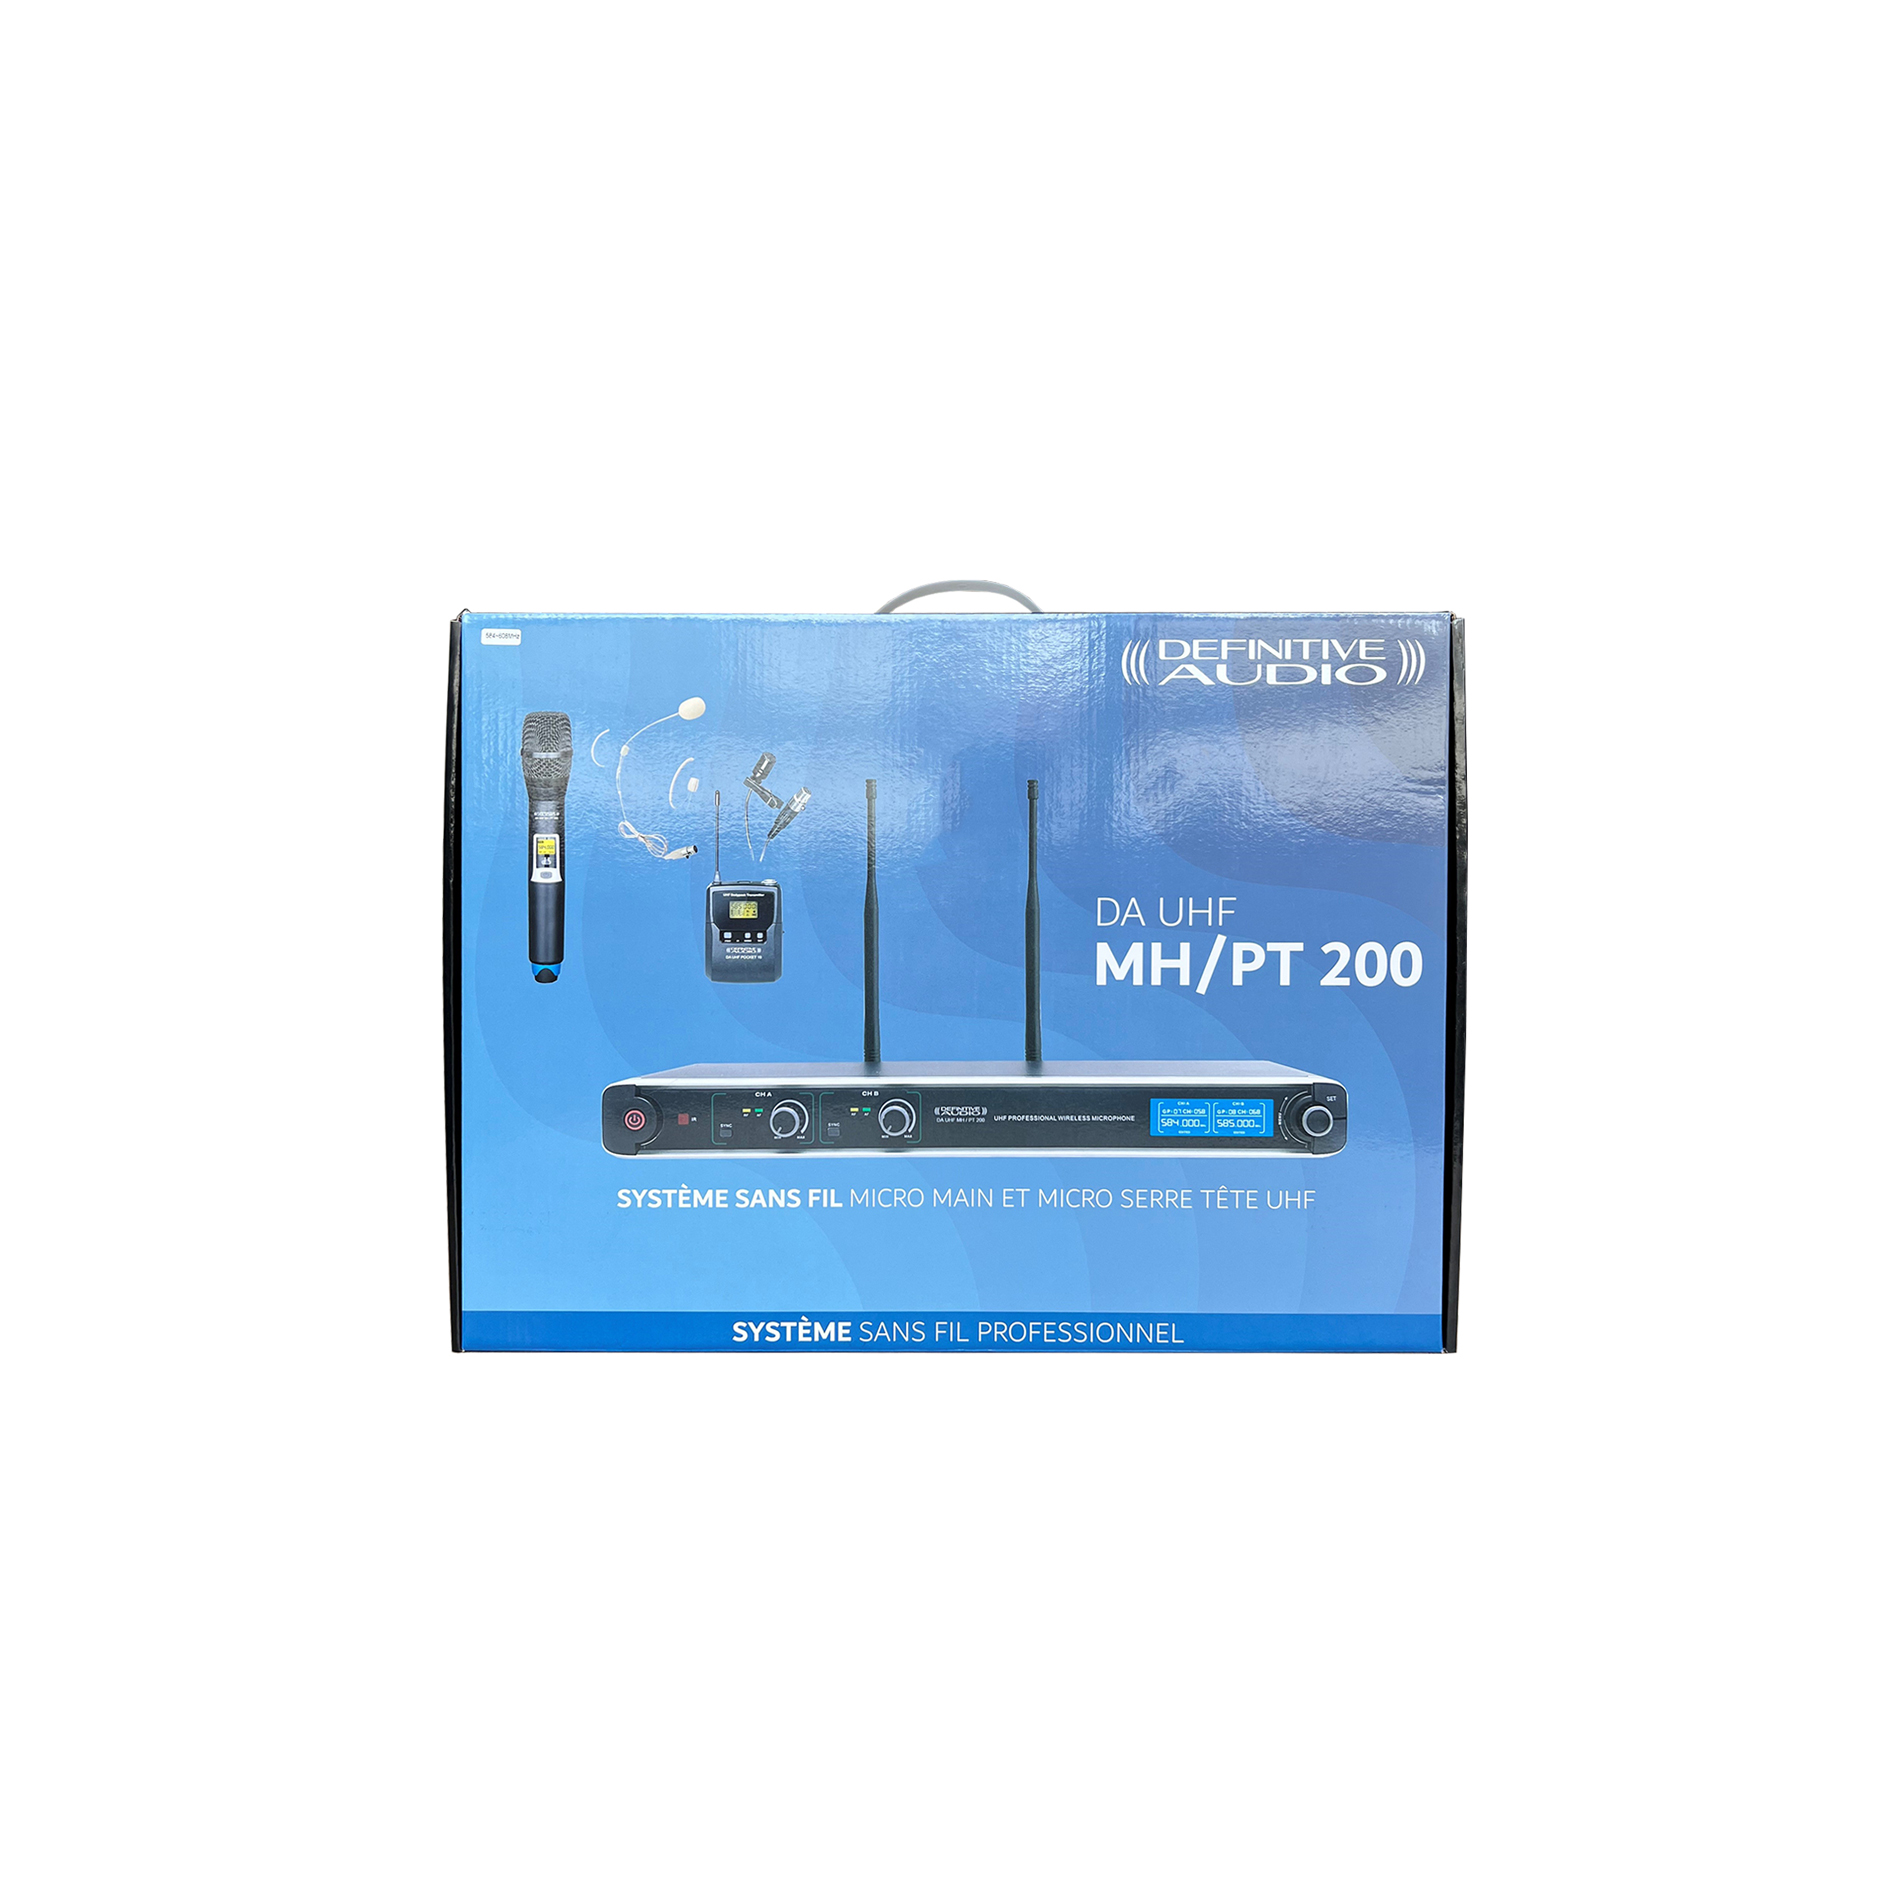 WM 4400 PT UHF GR2 - Simple Micro main UHF + Micro serre-tête + Micro-cravate  + Emetteur de poche PT UHF – Freq 824-827.5 MHZ